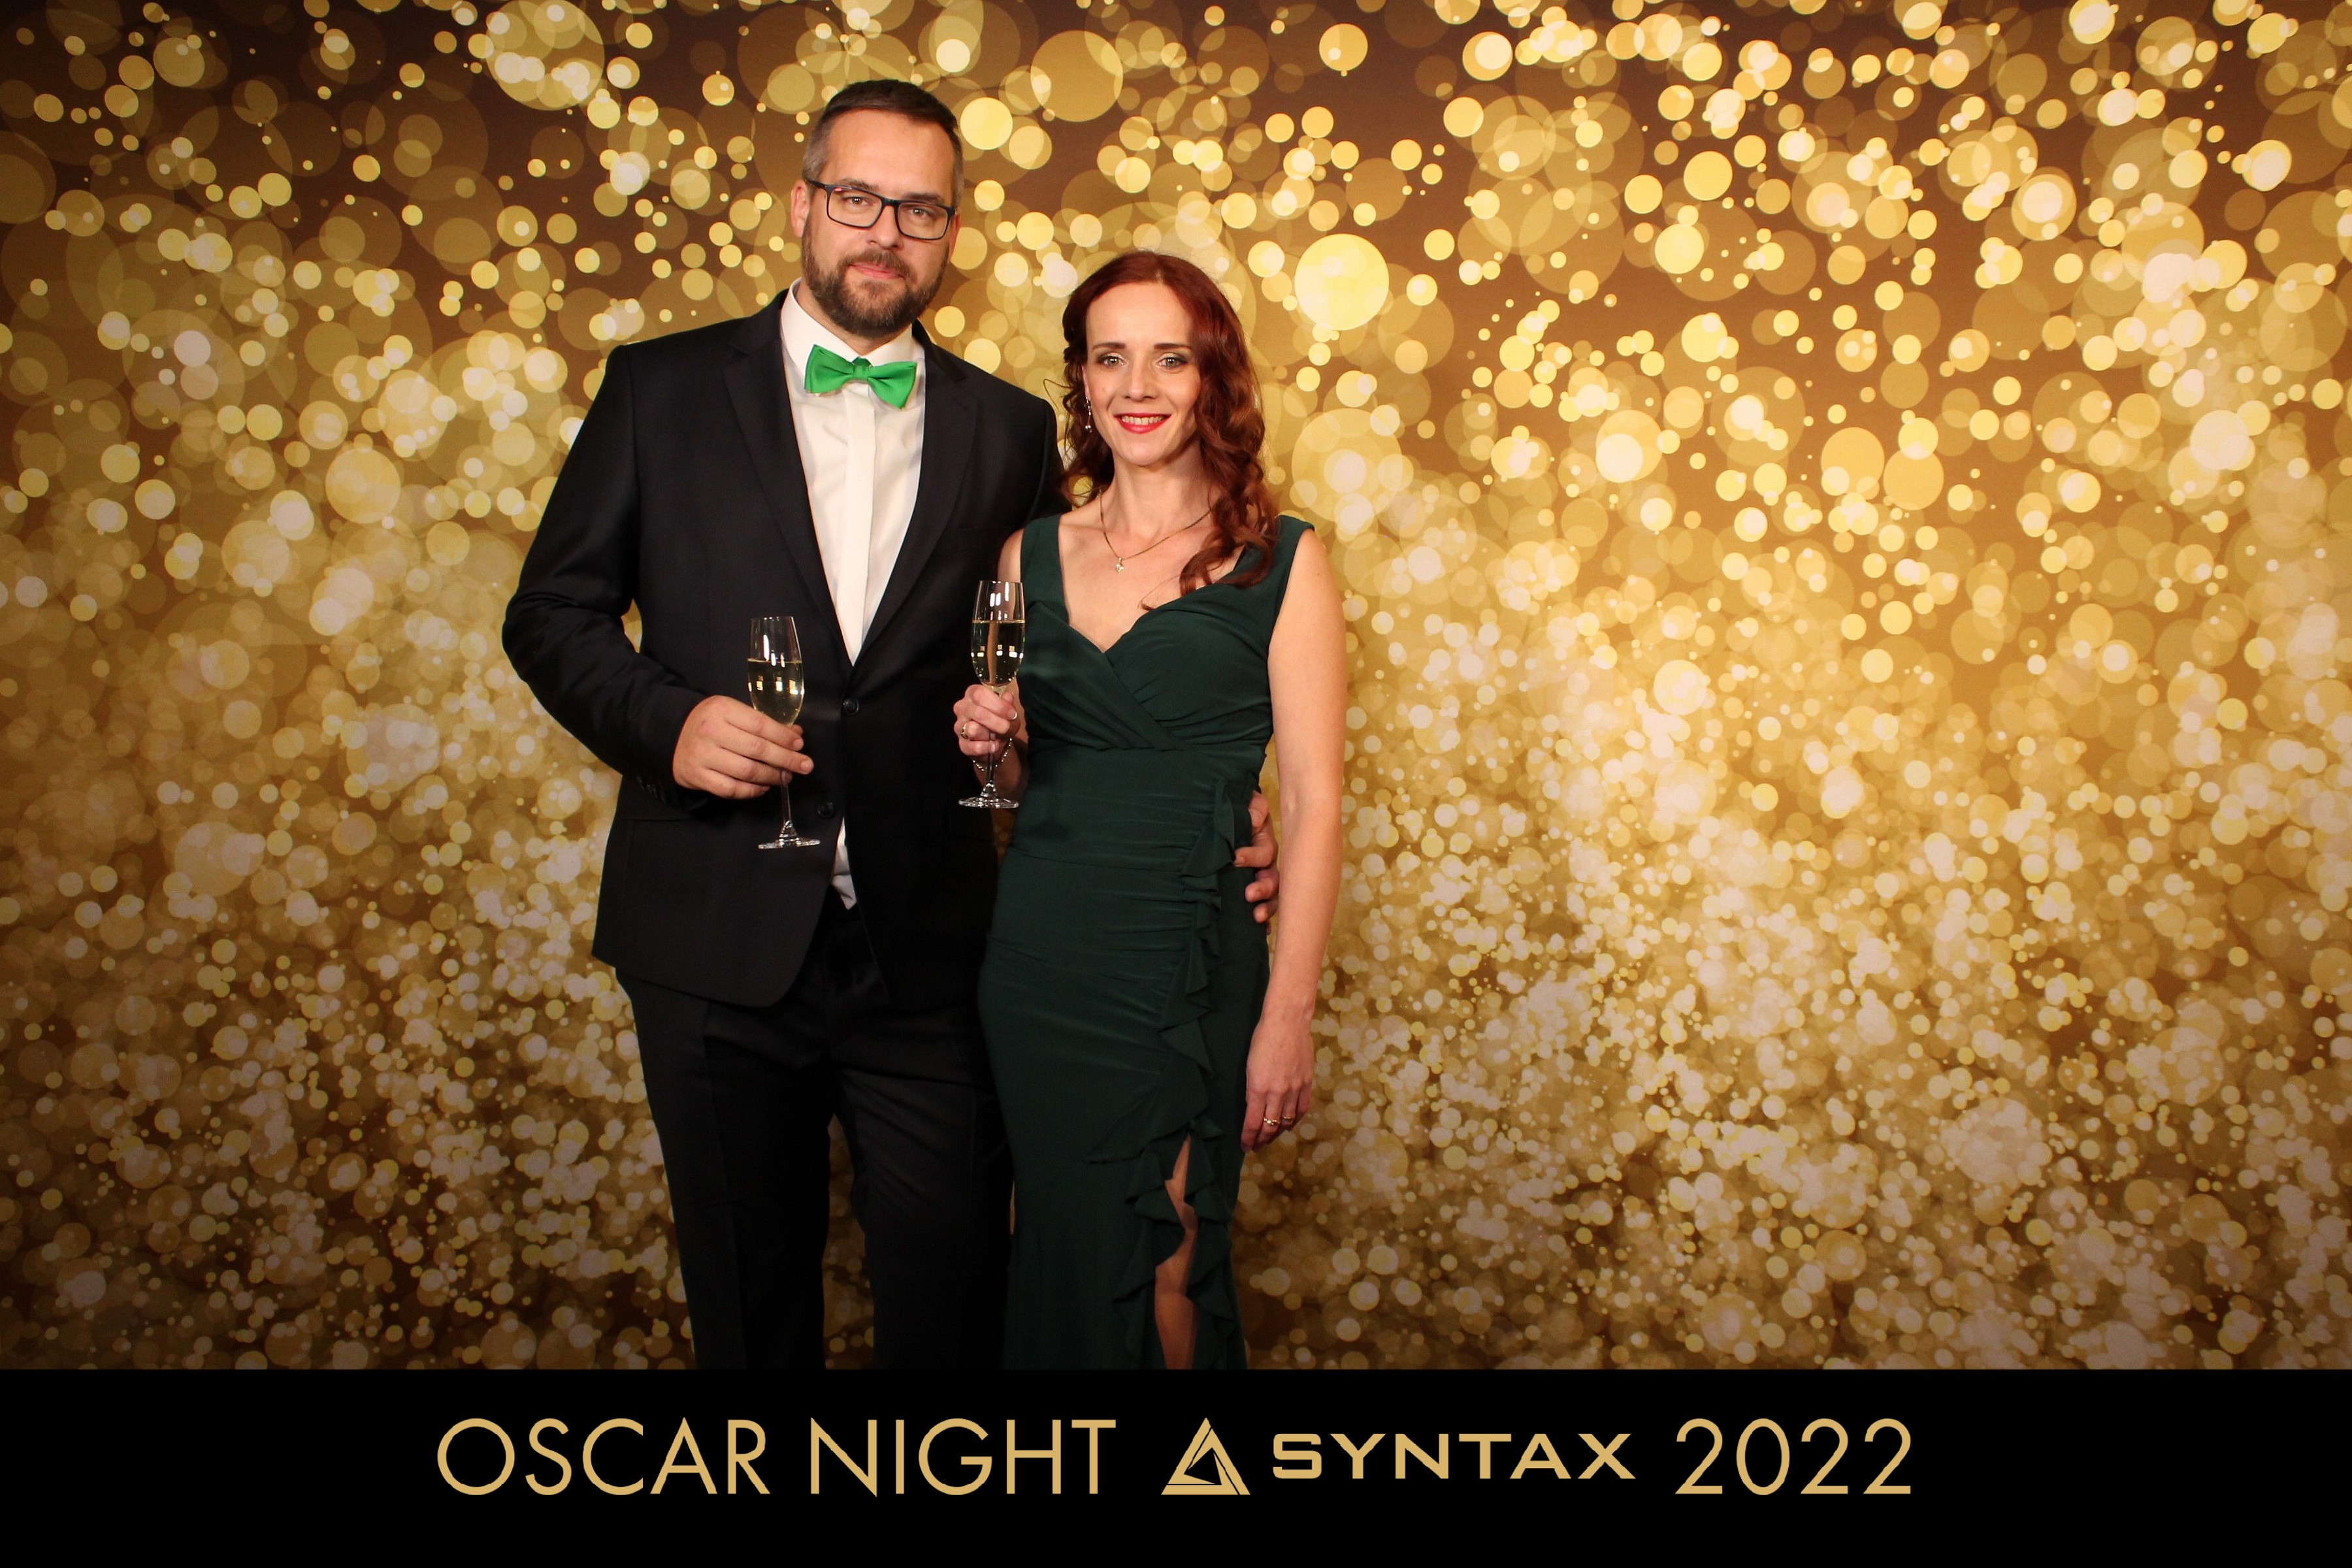 Oscar Night Syntax